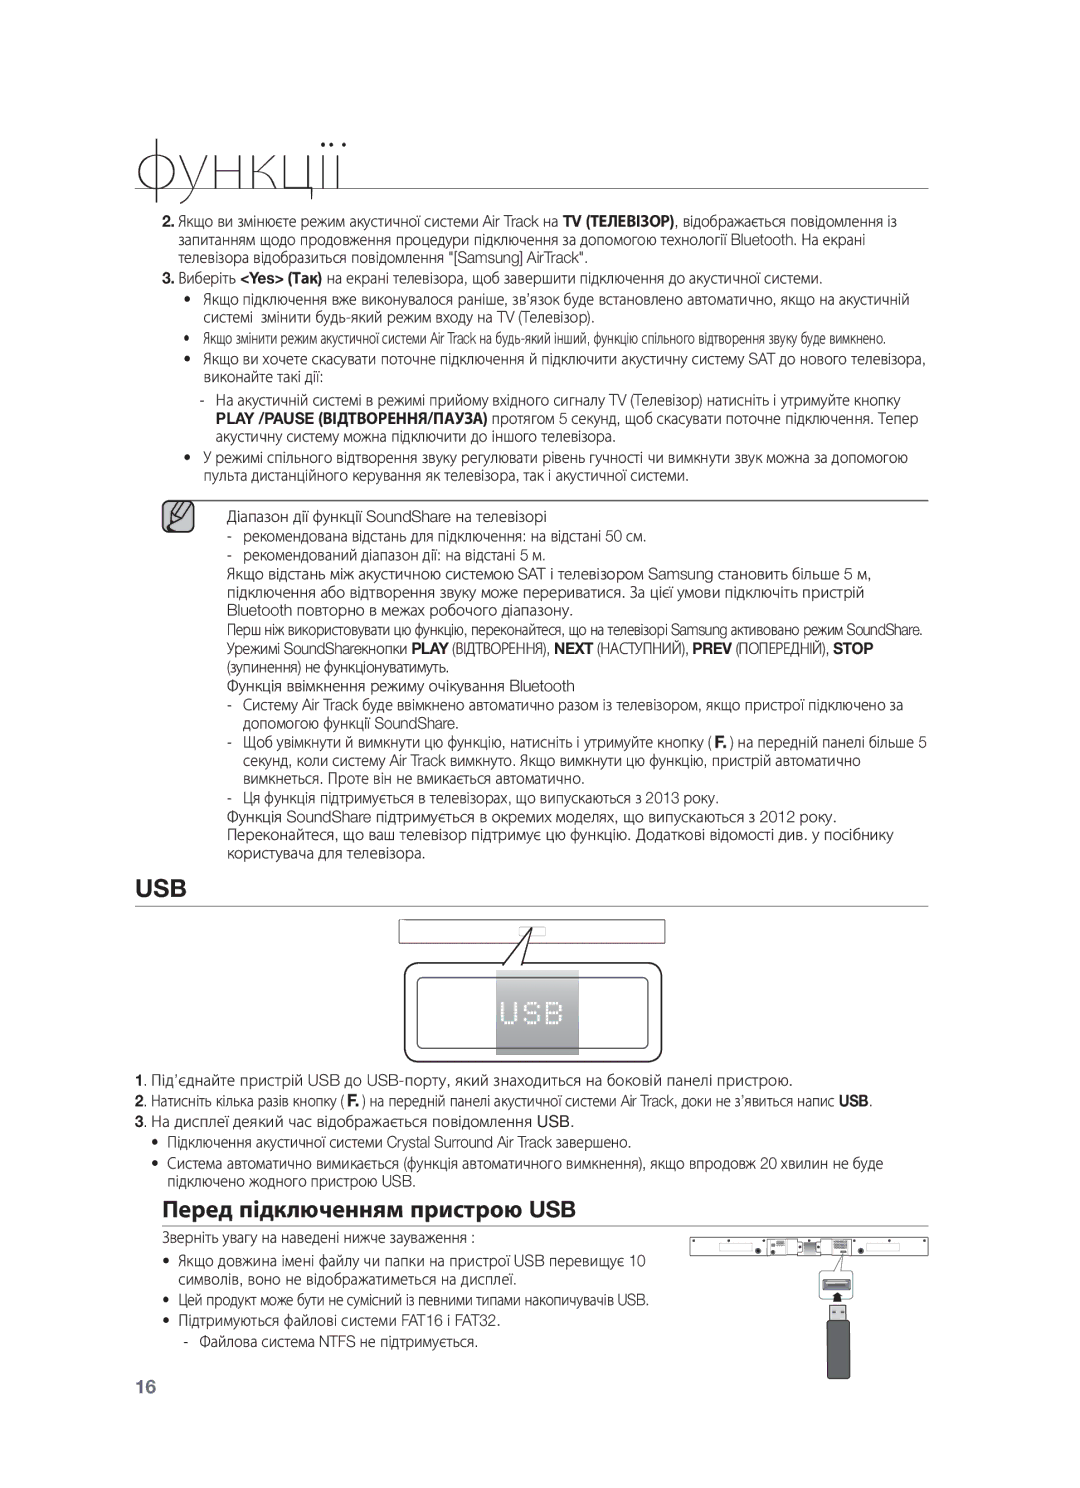 Samsung HW-F355/RU, HW-F350/RU manual Перед підключенням пристрою USB, Зверніть увагу на наведені нижче зауваження 